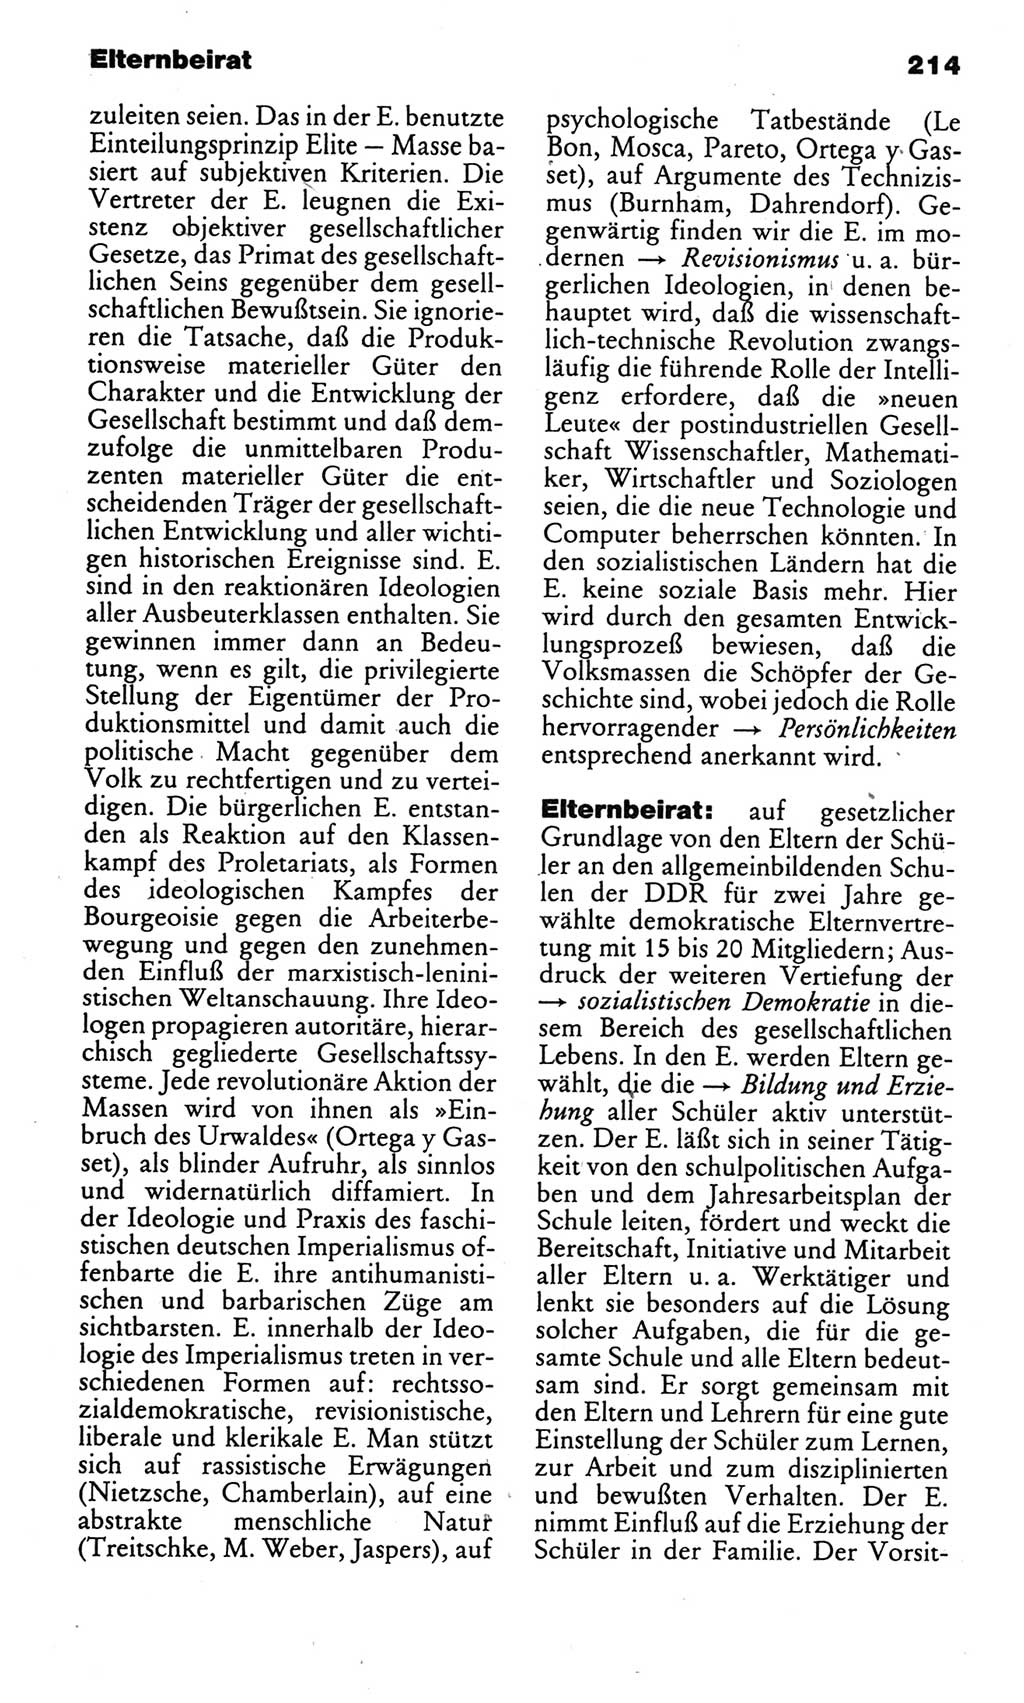 Kleines politisches Wörterbuch [Deutsche Demokratische Republik (DDR)] 1985, Seite 214 (Kl. pol. Wb. DDR 1985, S. 214)